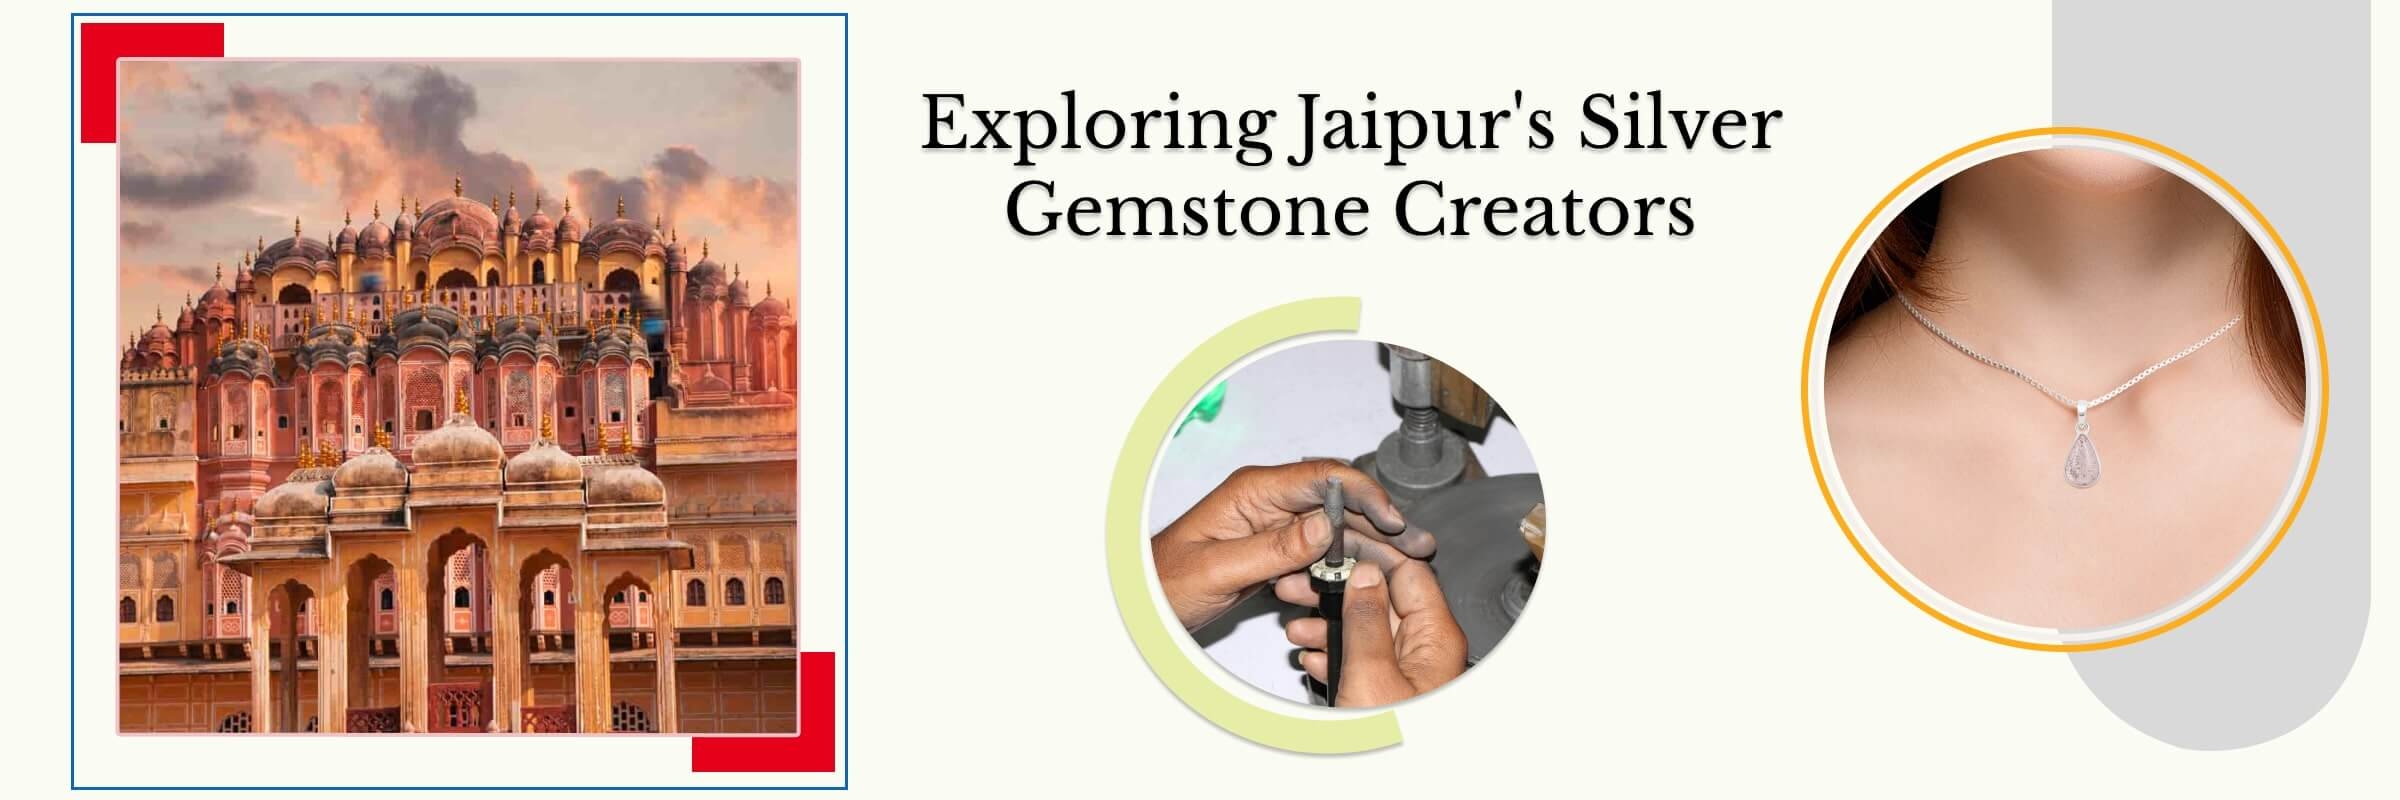 Silver Gemstone Jewelry Manufacturer in Jaipur